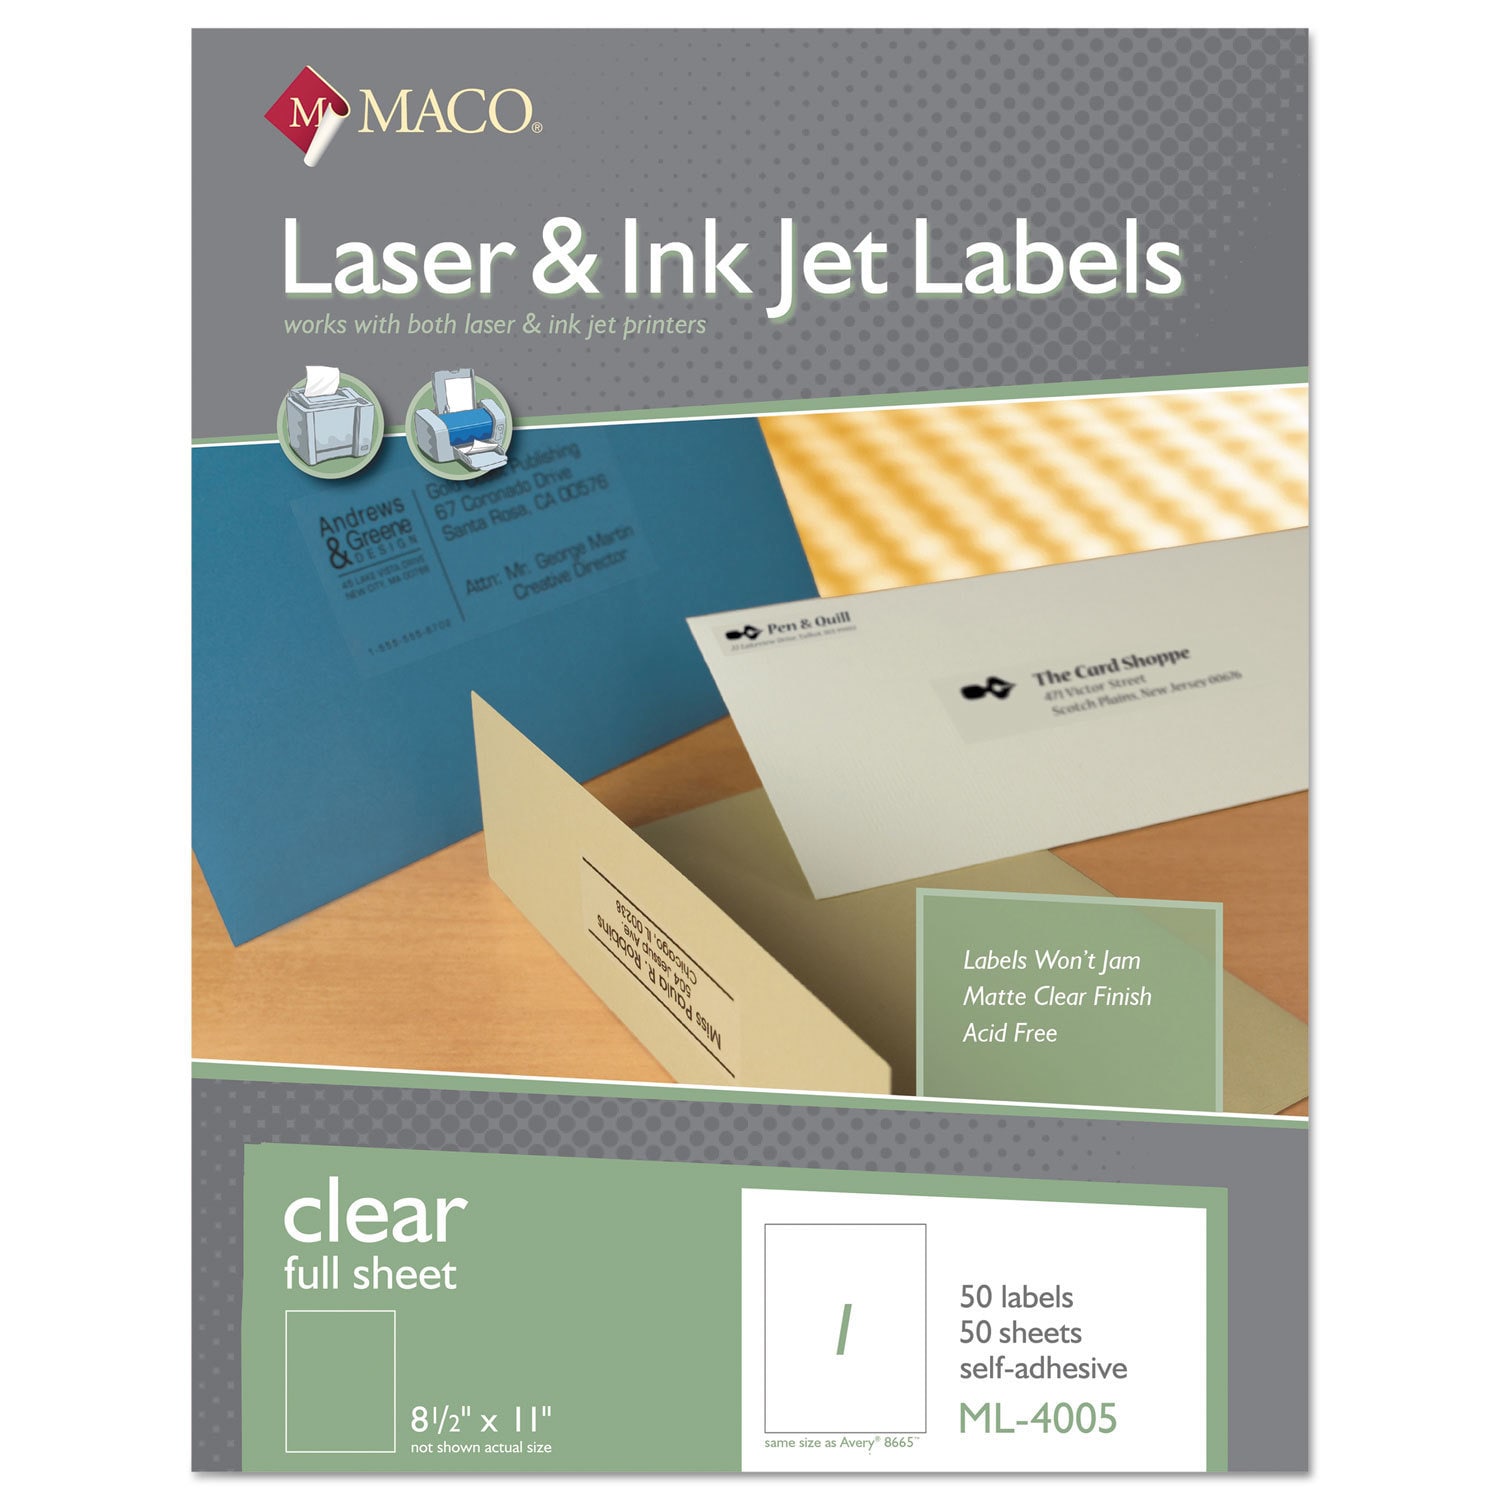 maco-laser-inkjet-matte-clear-full-sheet-labels-8-1-2-x-11-clear-ebay